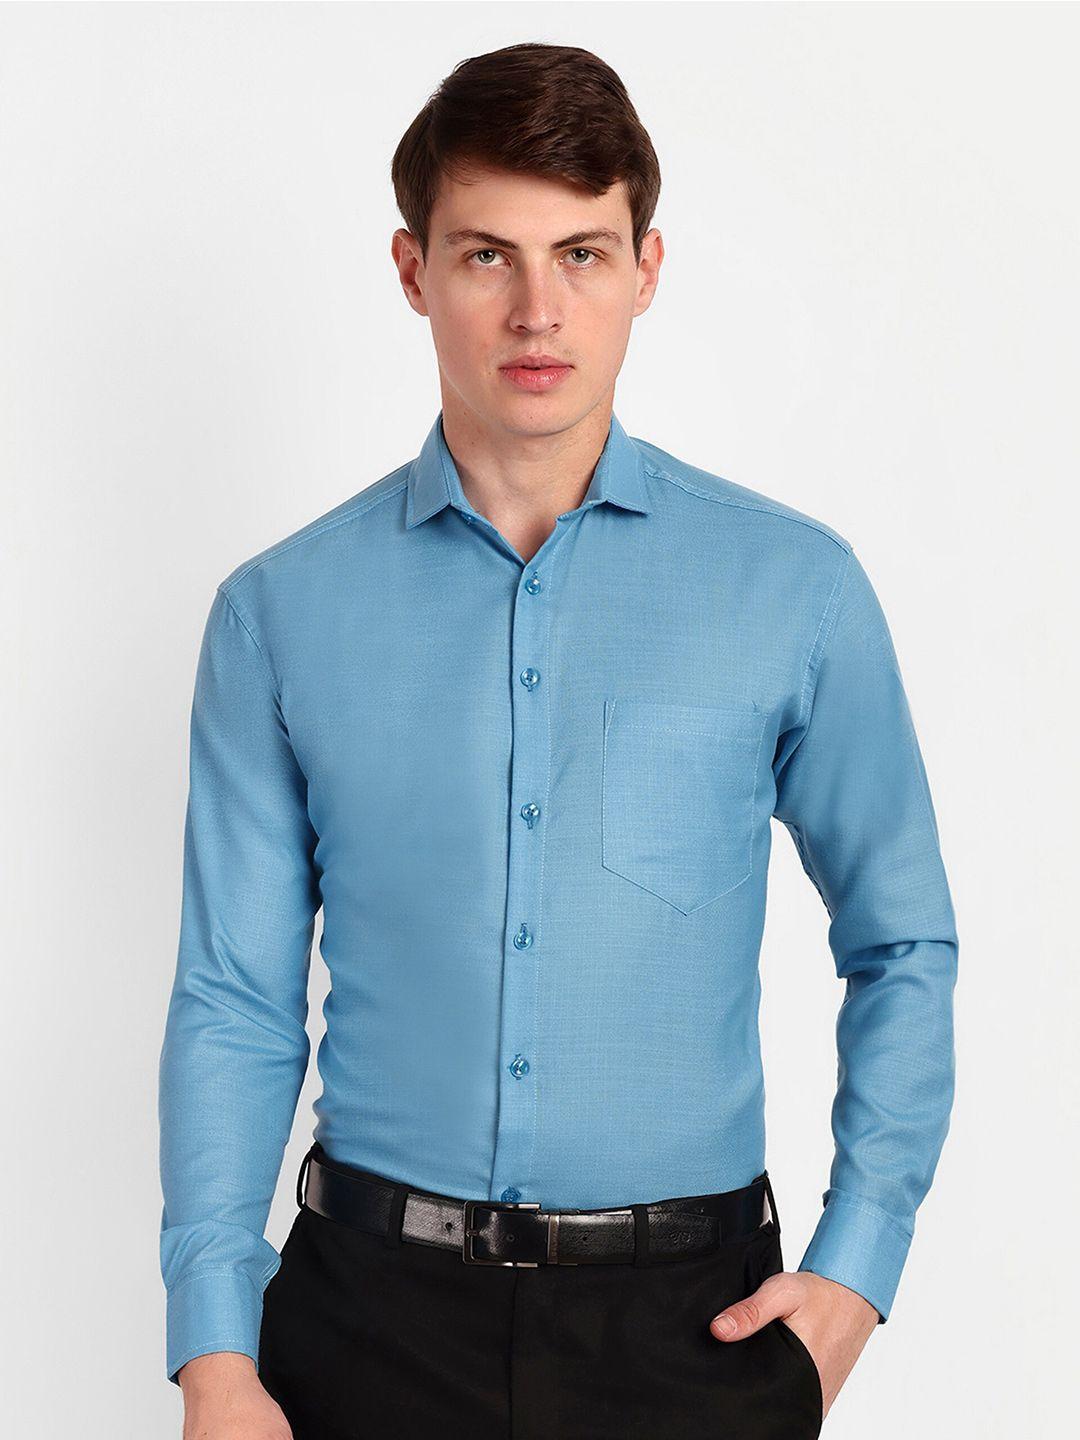 colorwings men turquoise blue comfort semi sheer formal shirt